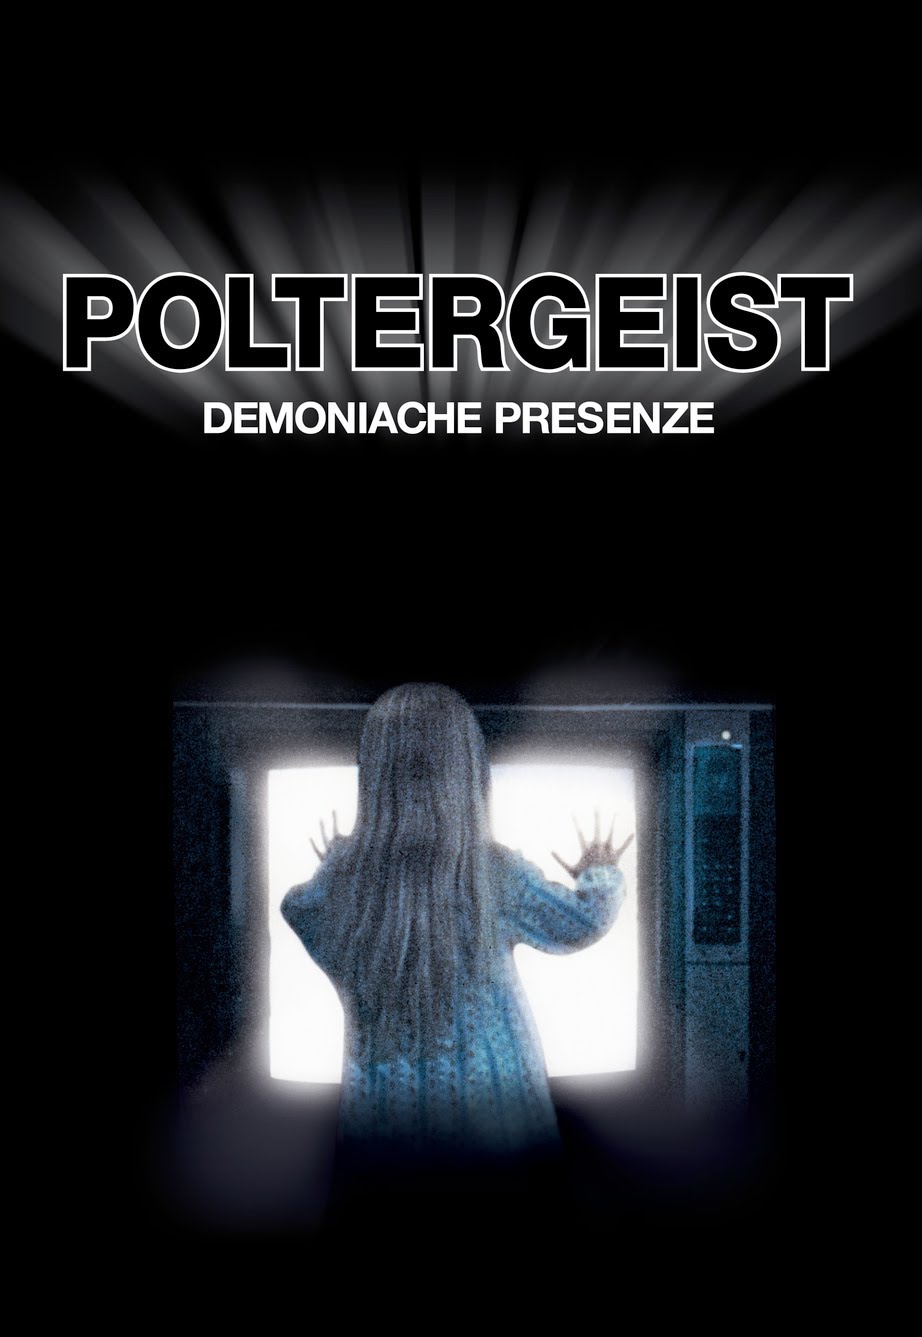 Poltergeist – Demoniache presenze [HD] (1982)